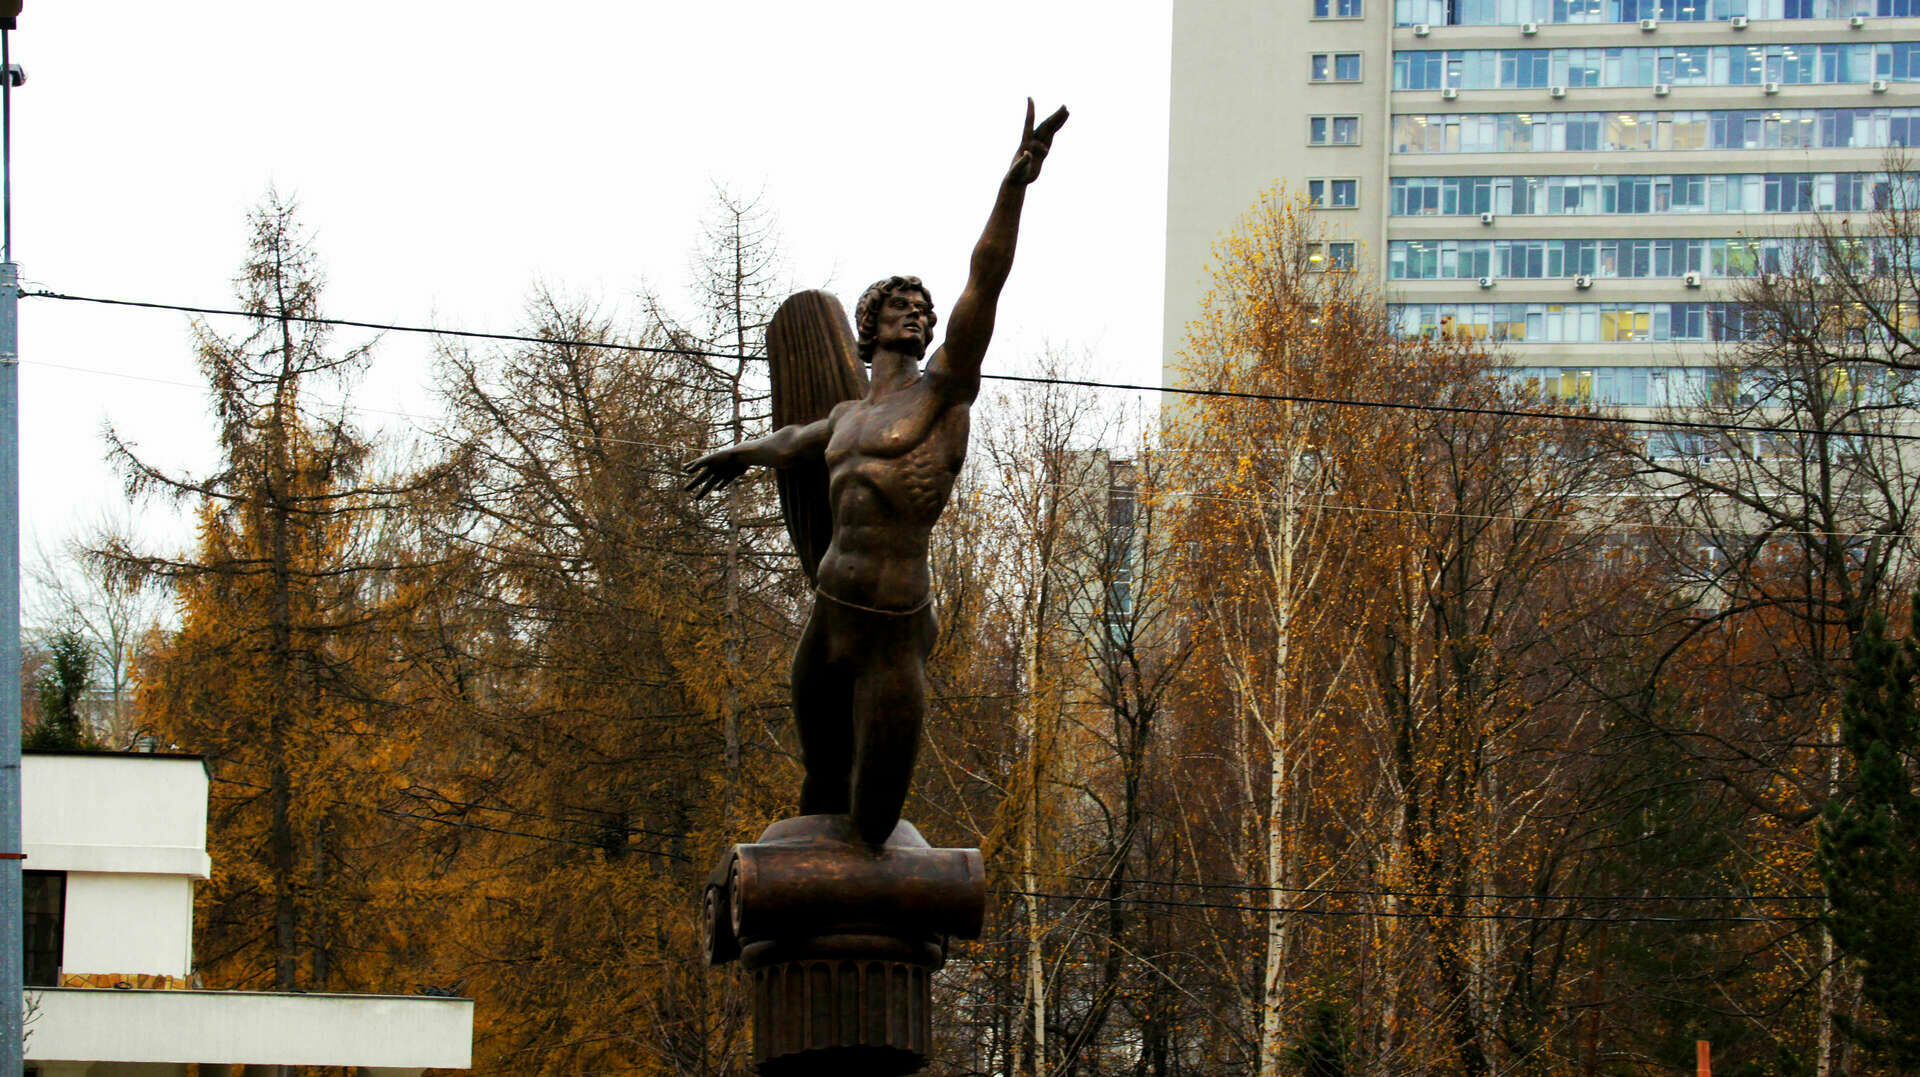 "Не по-балетному". В Казани критикуют новый памятник Нурееву от Церетели